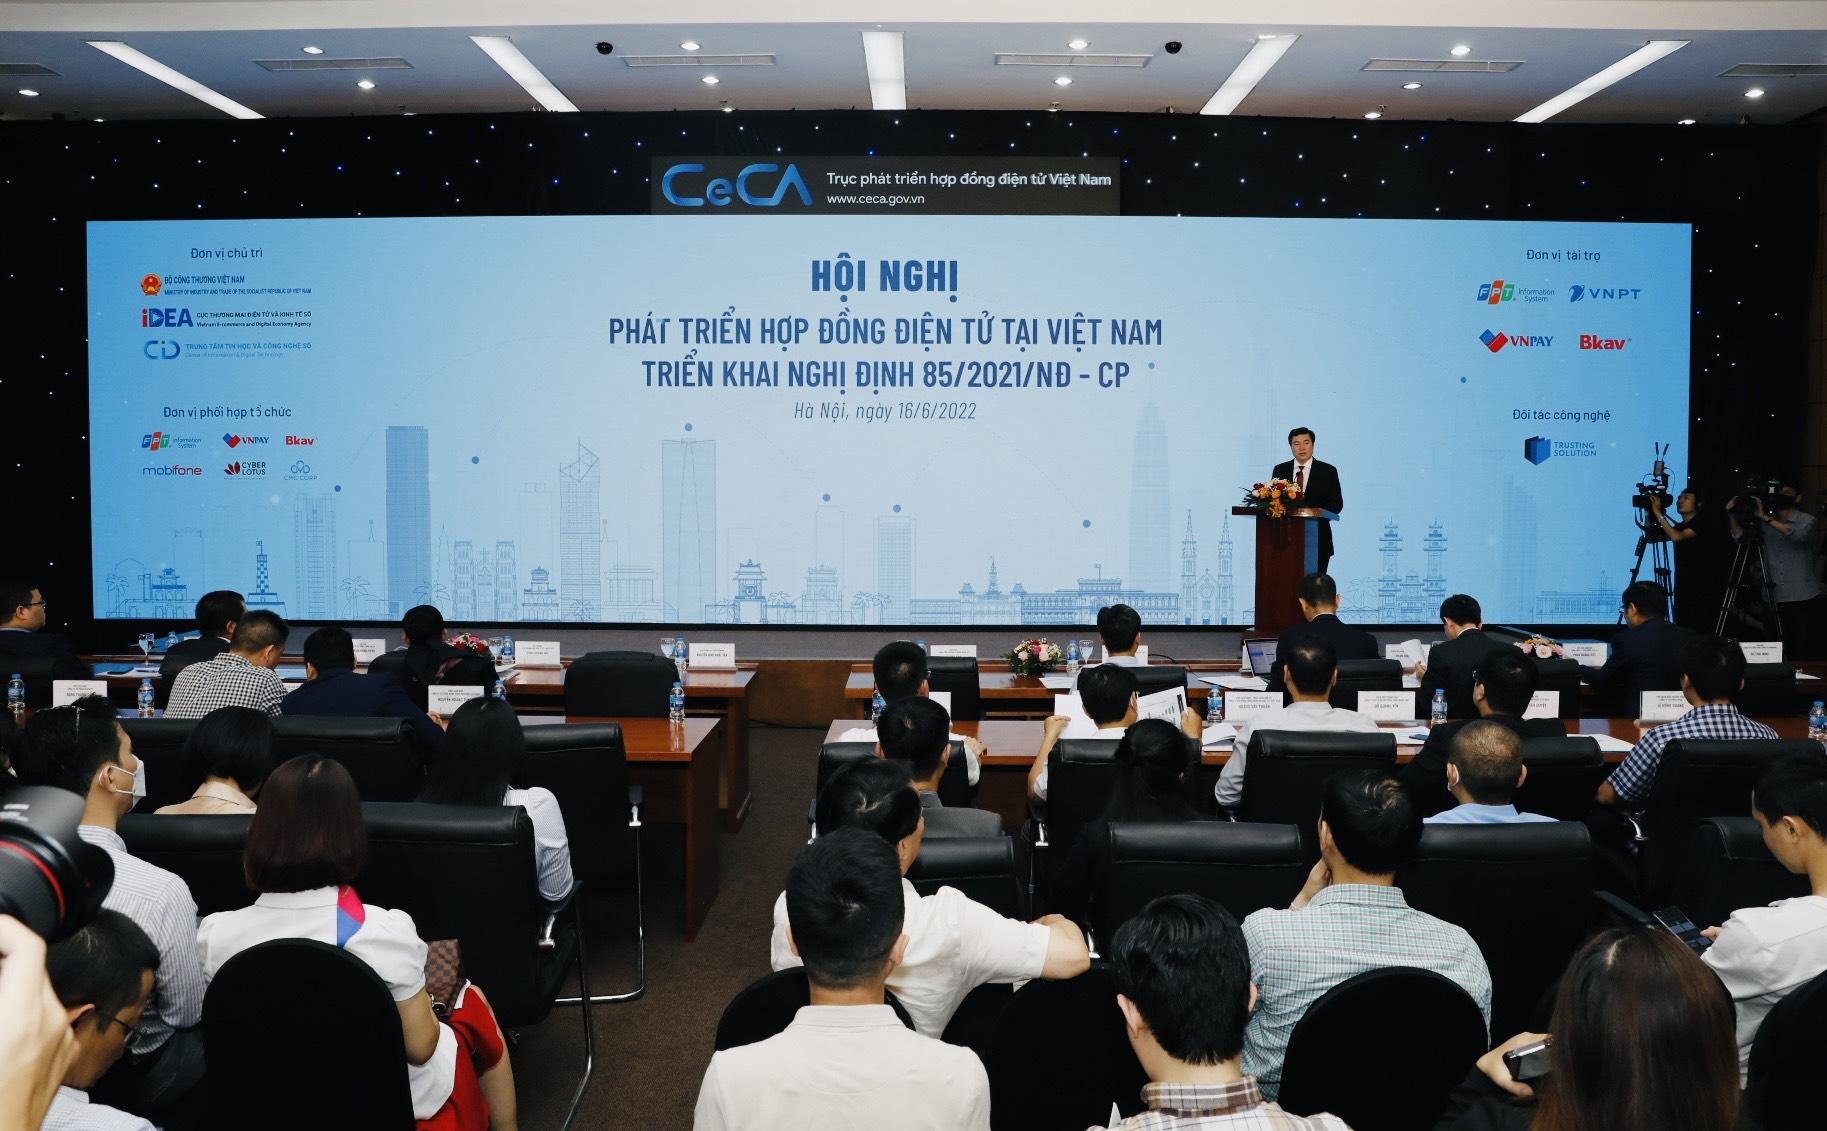 Phát triển hợp đồng điện tử tại Việt Nam - Triển khai Nghị định 85/2021/NĐ-CP